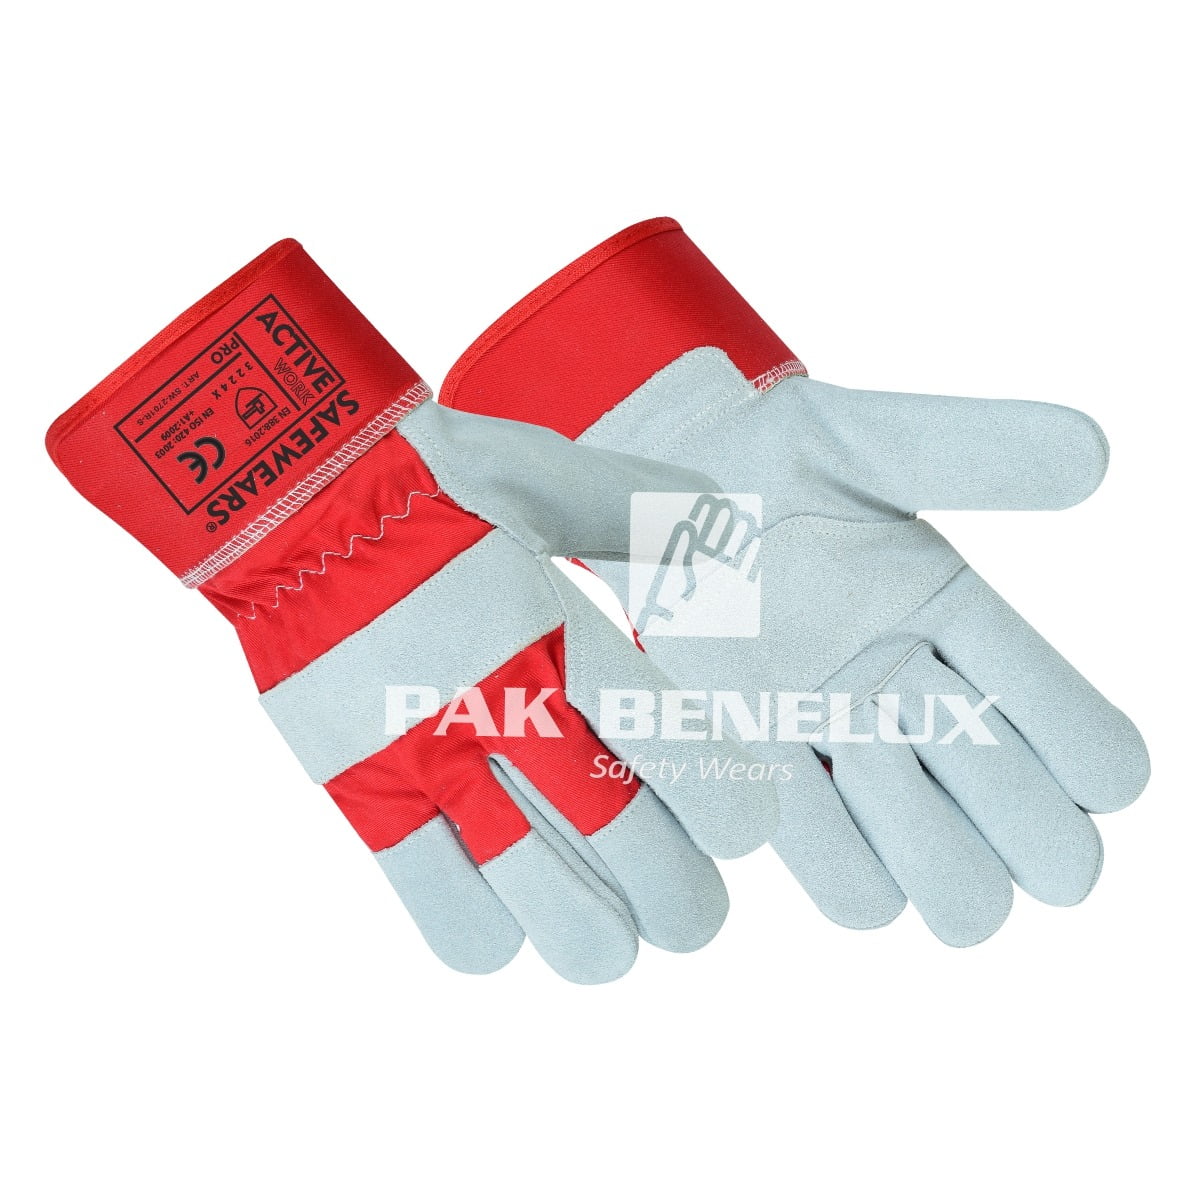 Work gloves Manufacturer in Pakistan